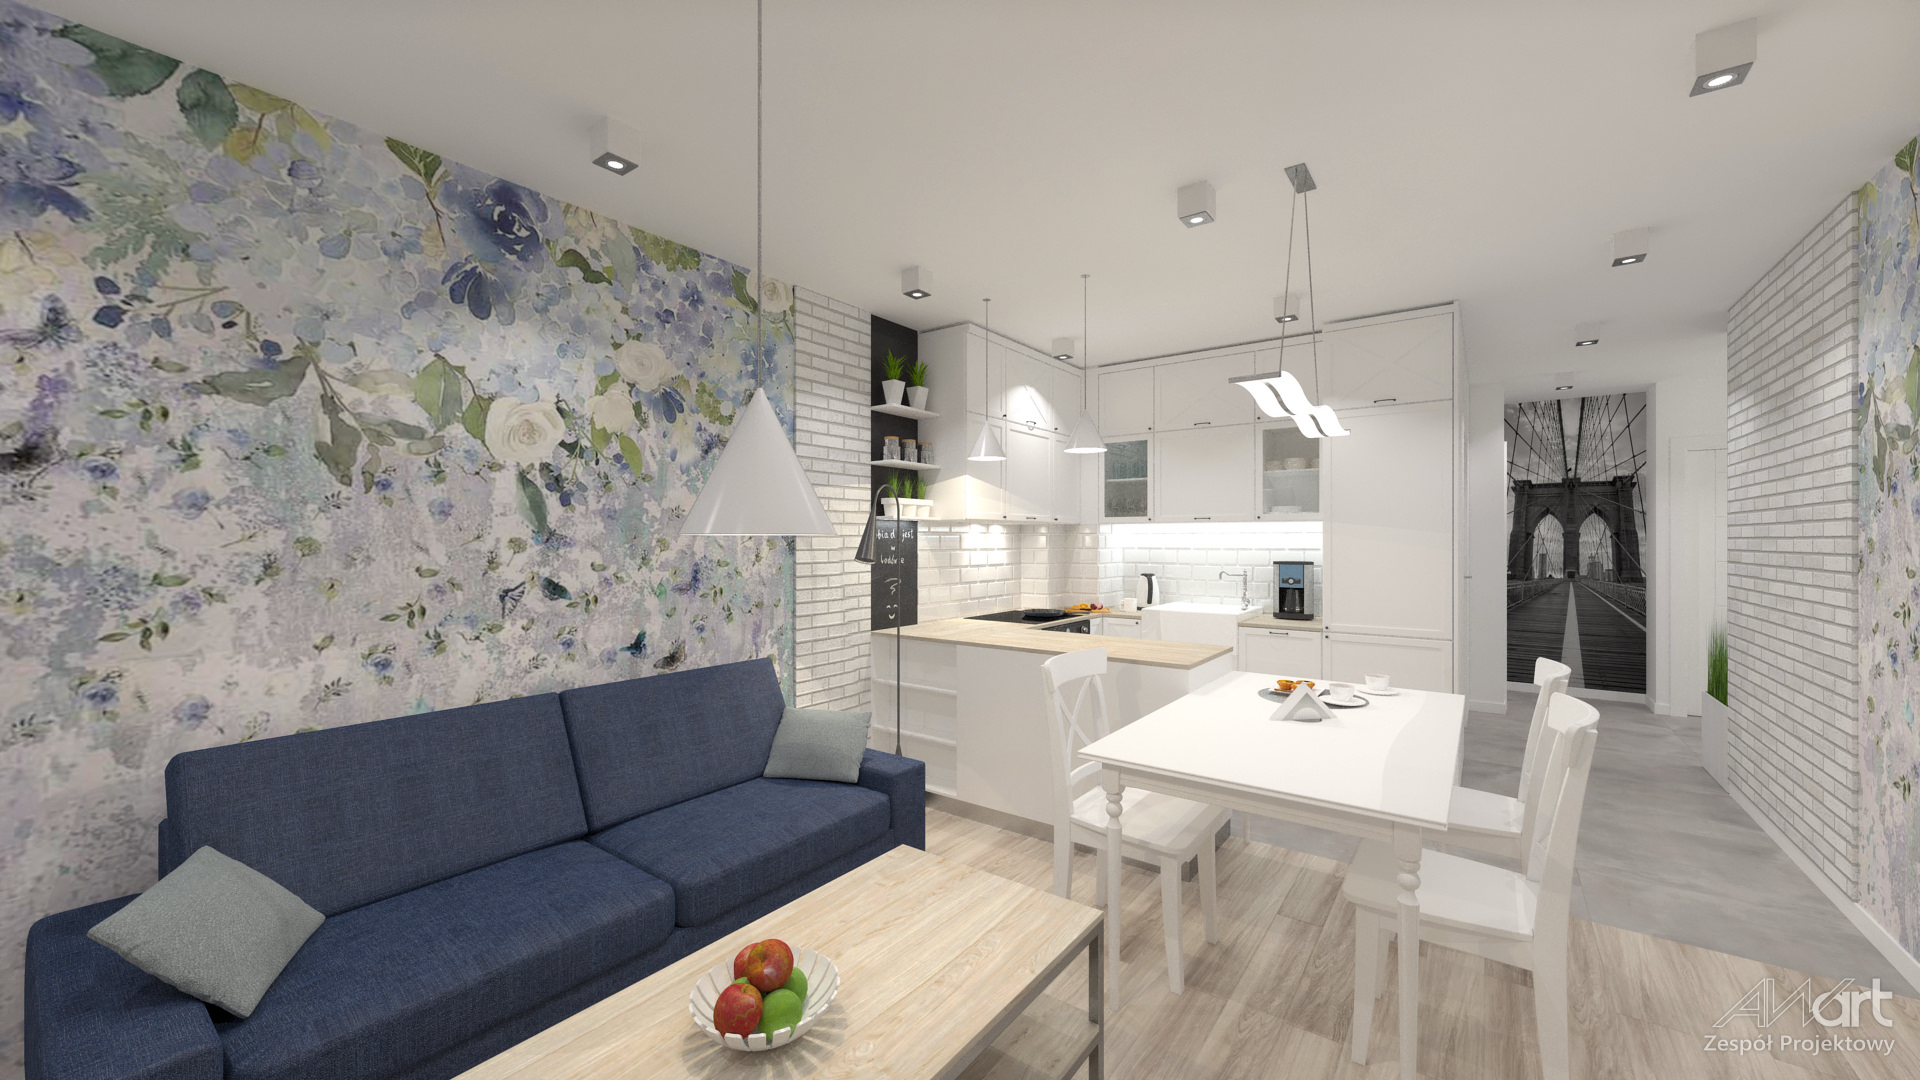 Wizualizacja wnętrza mieszkania - salon z jadalnią i aneksem kuchennym.